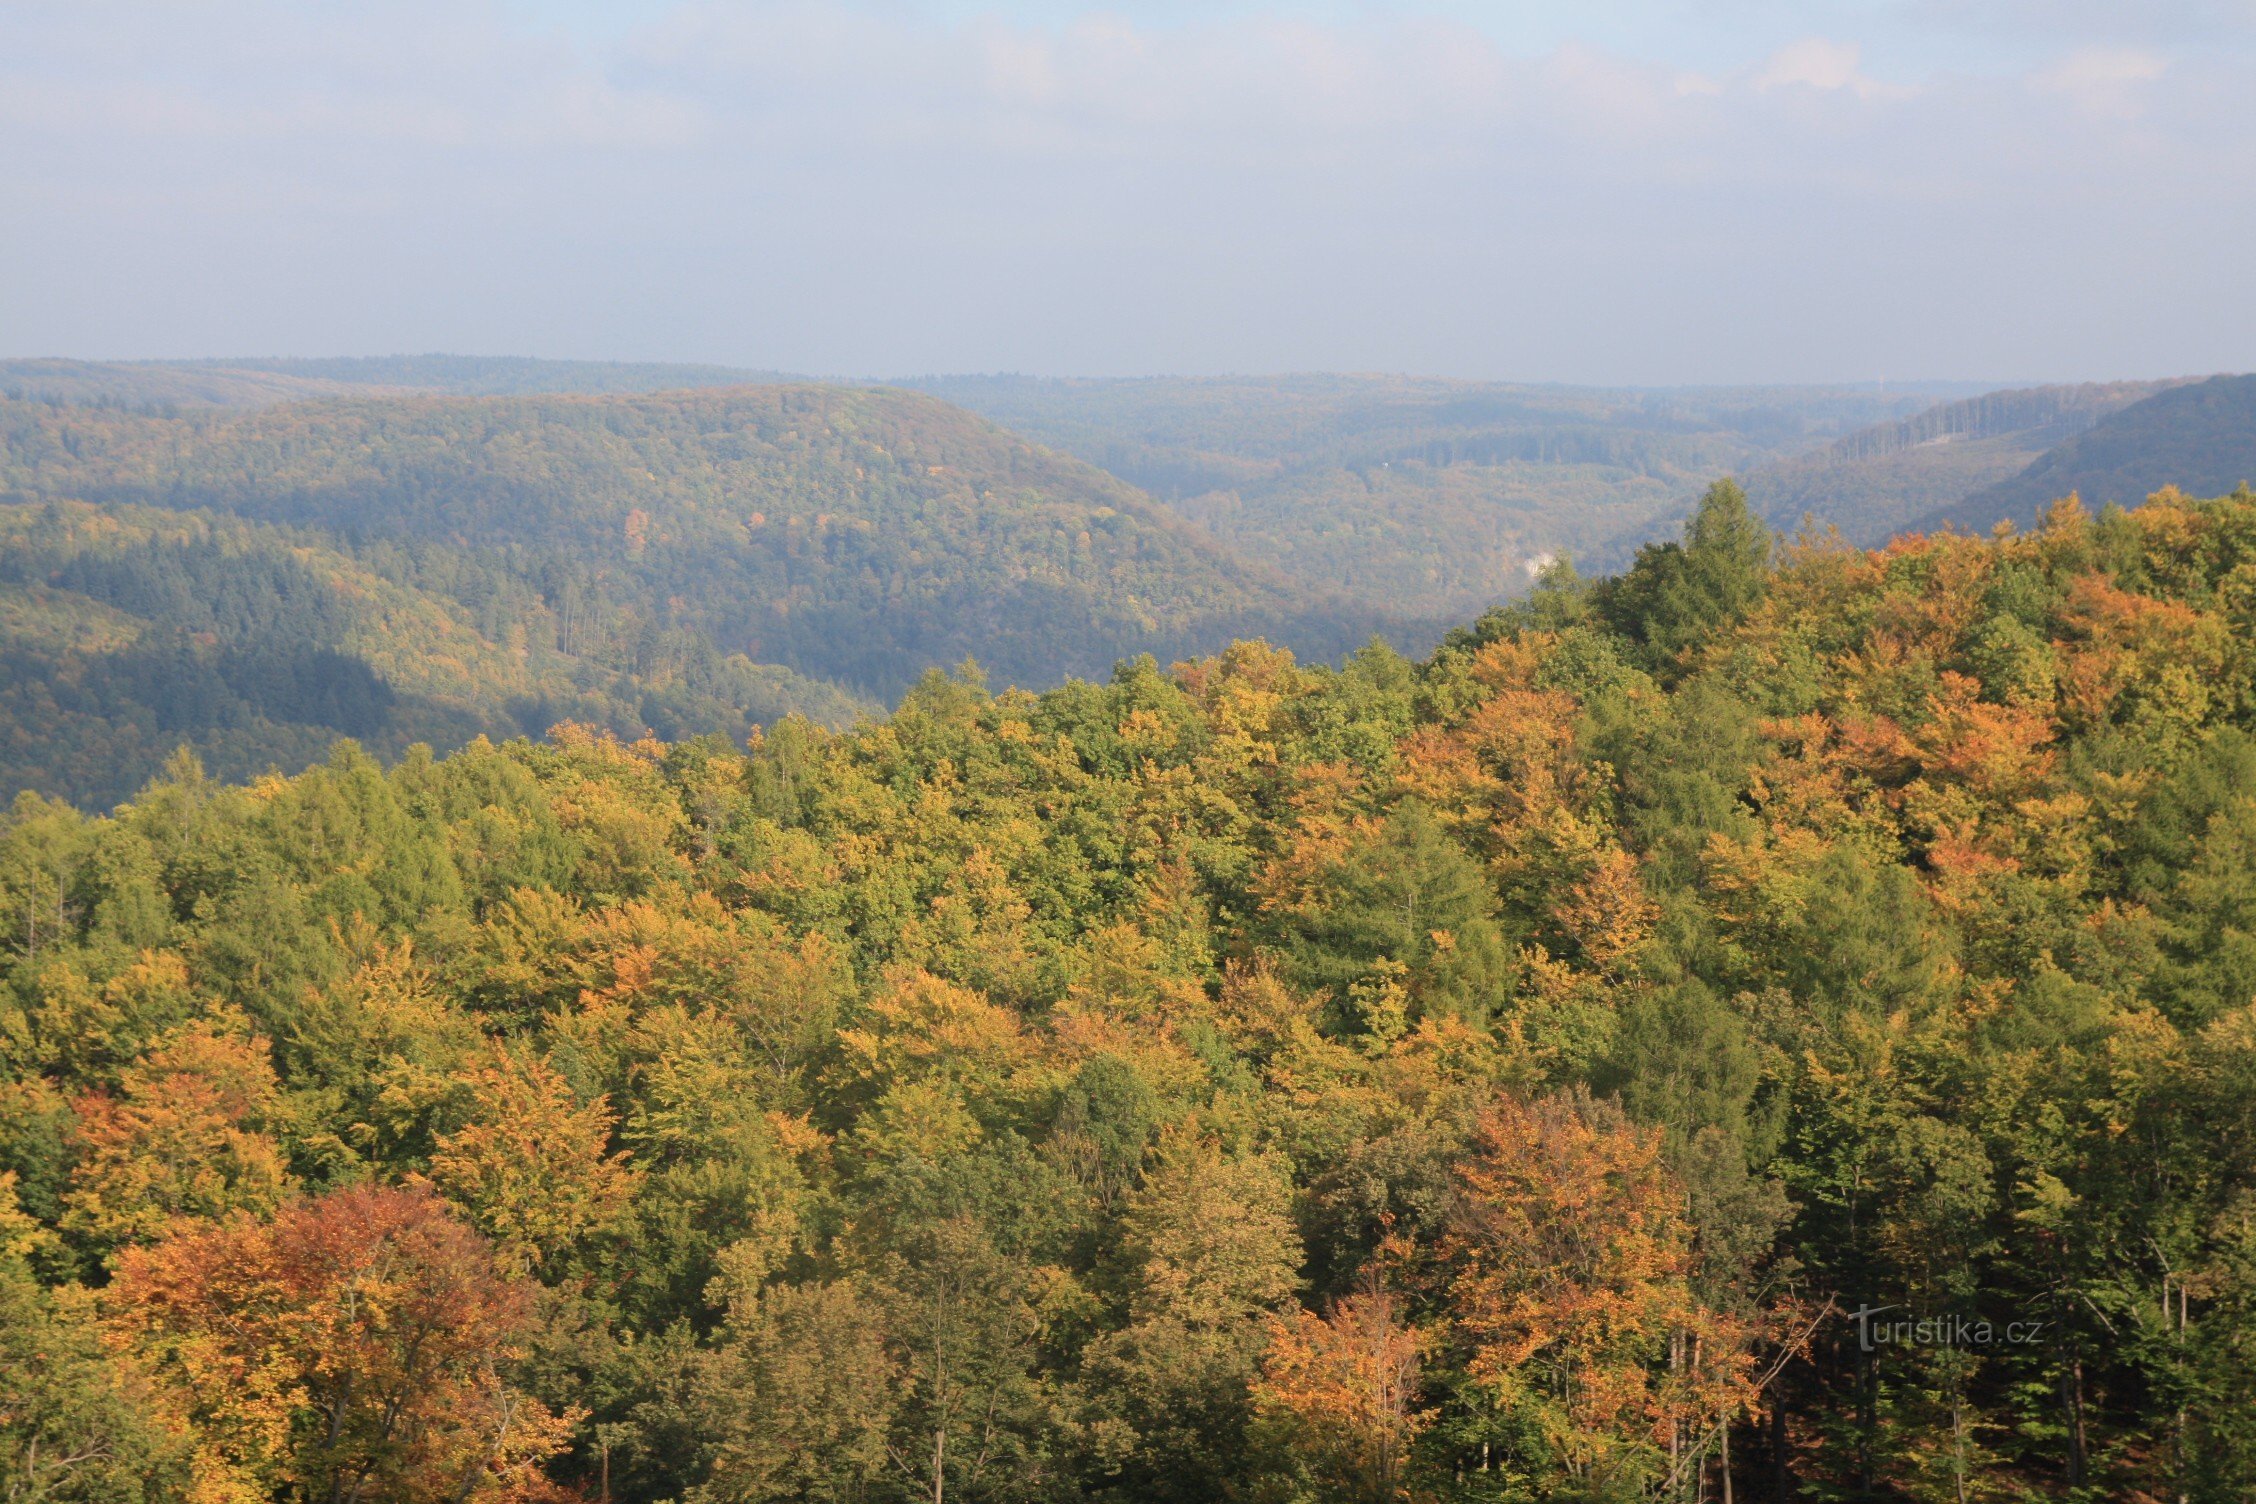 O vale profundo do Svitava das florestas de Vranov